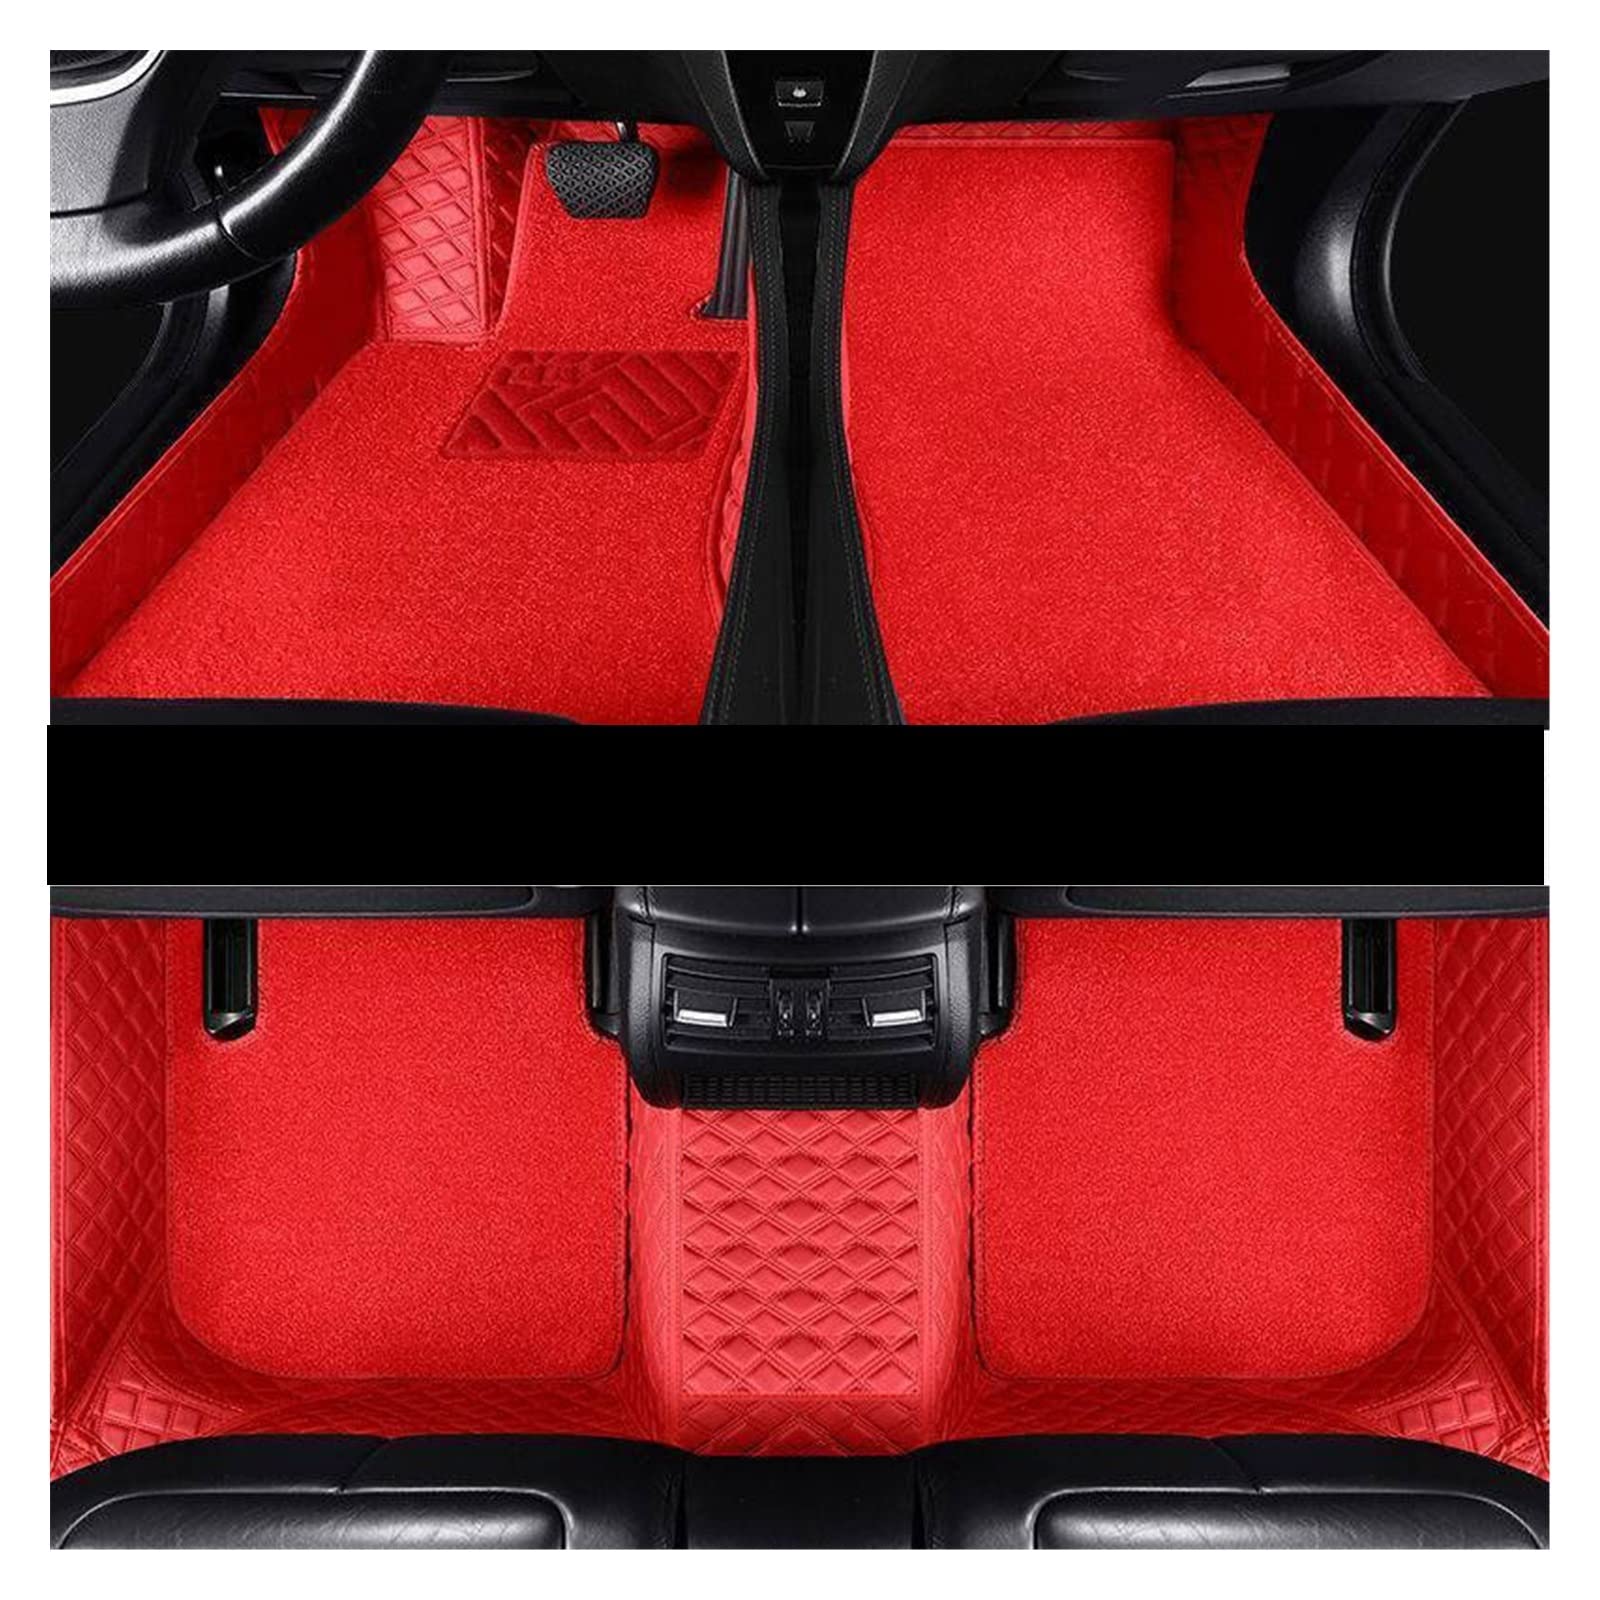 Fußmatten Für Infiniti Für Q50 2014 2015 Auto-Fußmatten Auto-Innenausstattung Teppiche Fußmatten Dash Custom Covers Kunstleder-Pads Autofußmatten(Red double) von DKPMWD